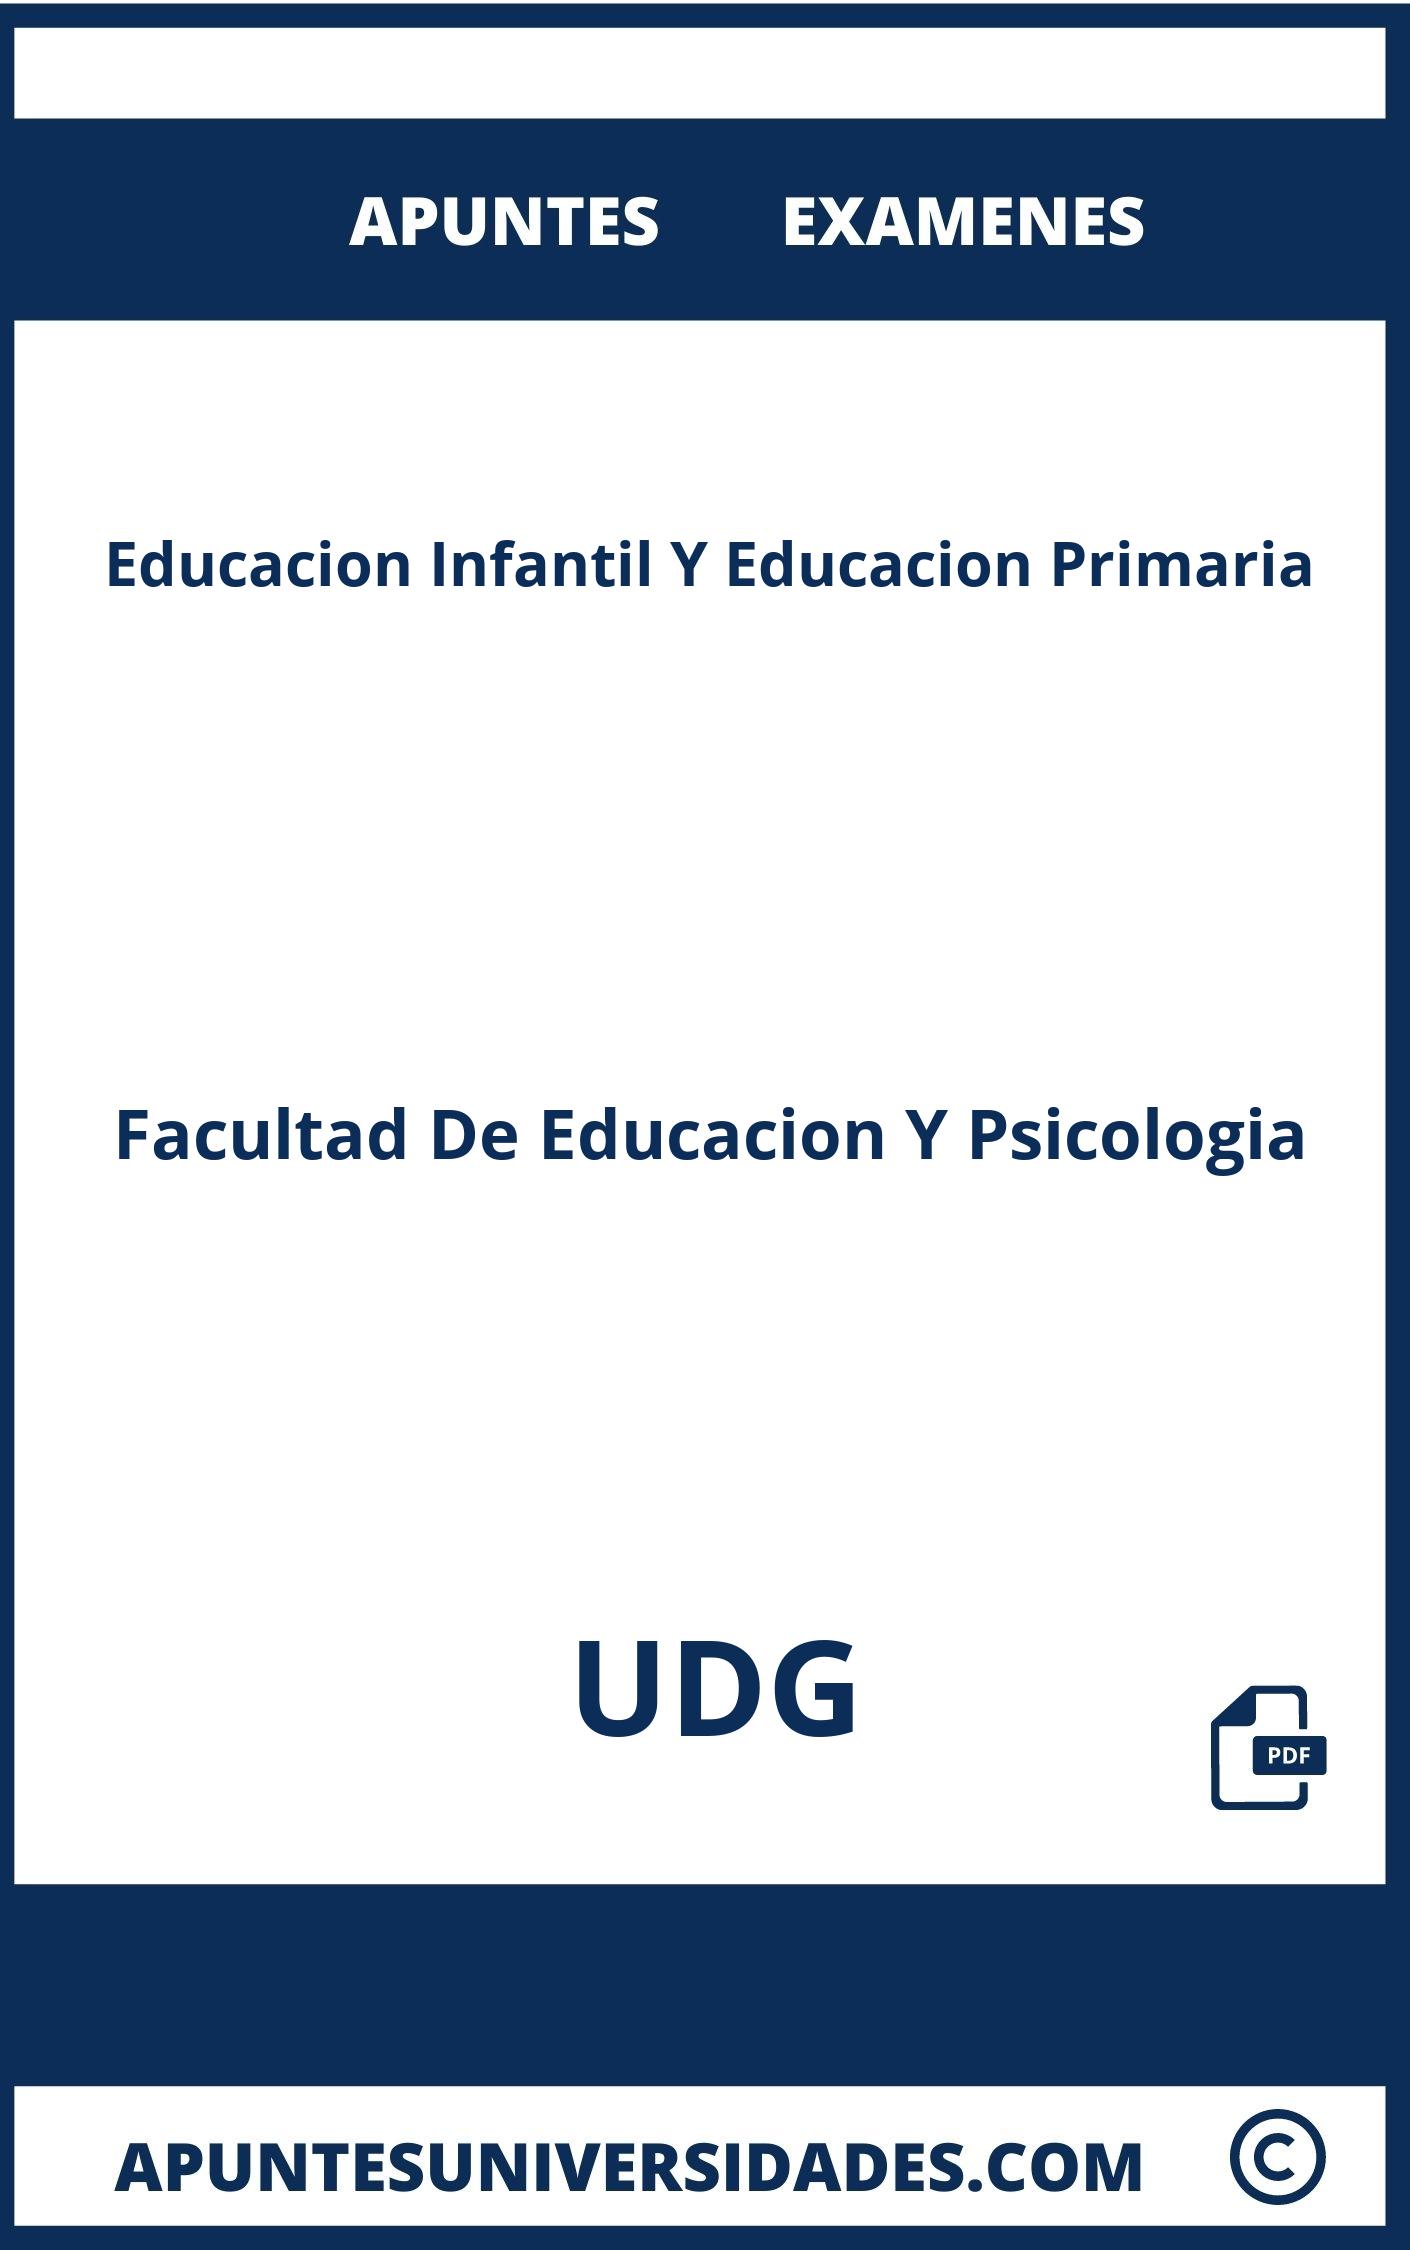 Examenes y Apuntes de Educacion Infantil Y Educacion Primaria UDG